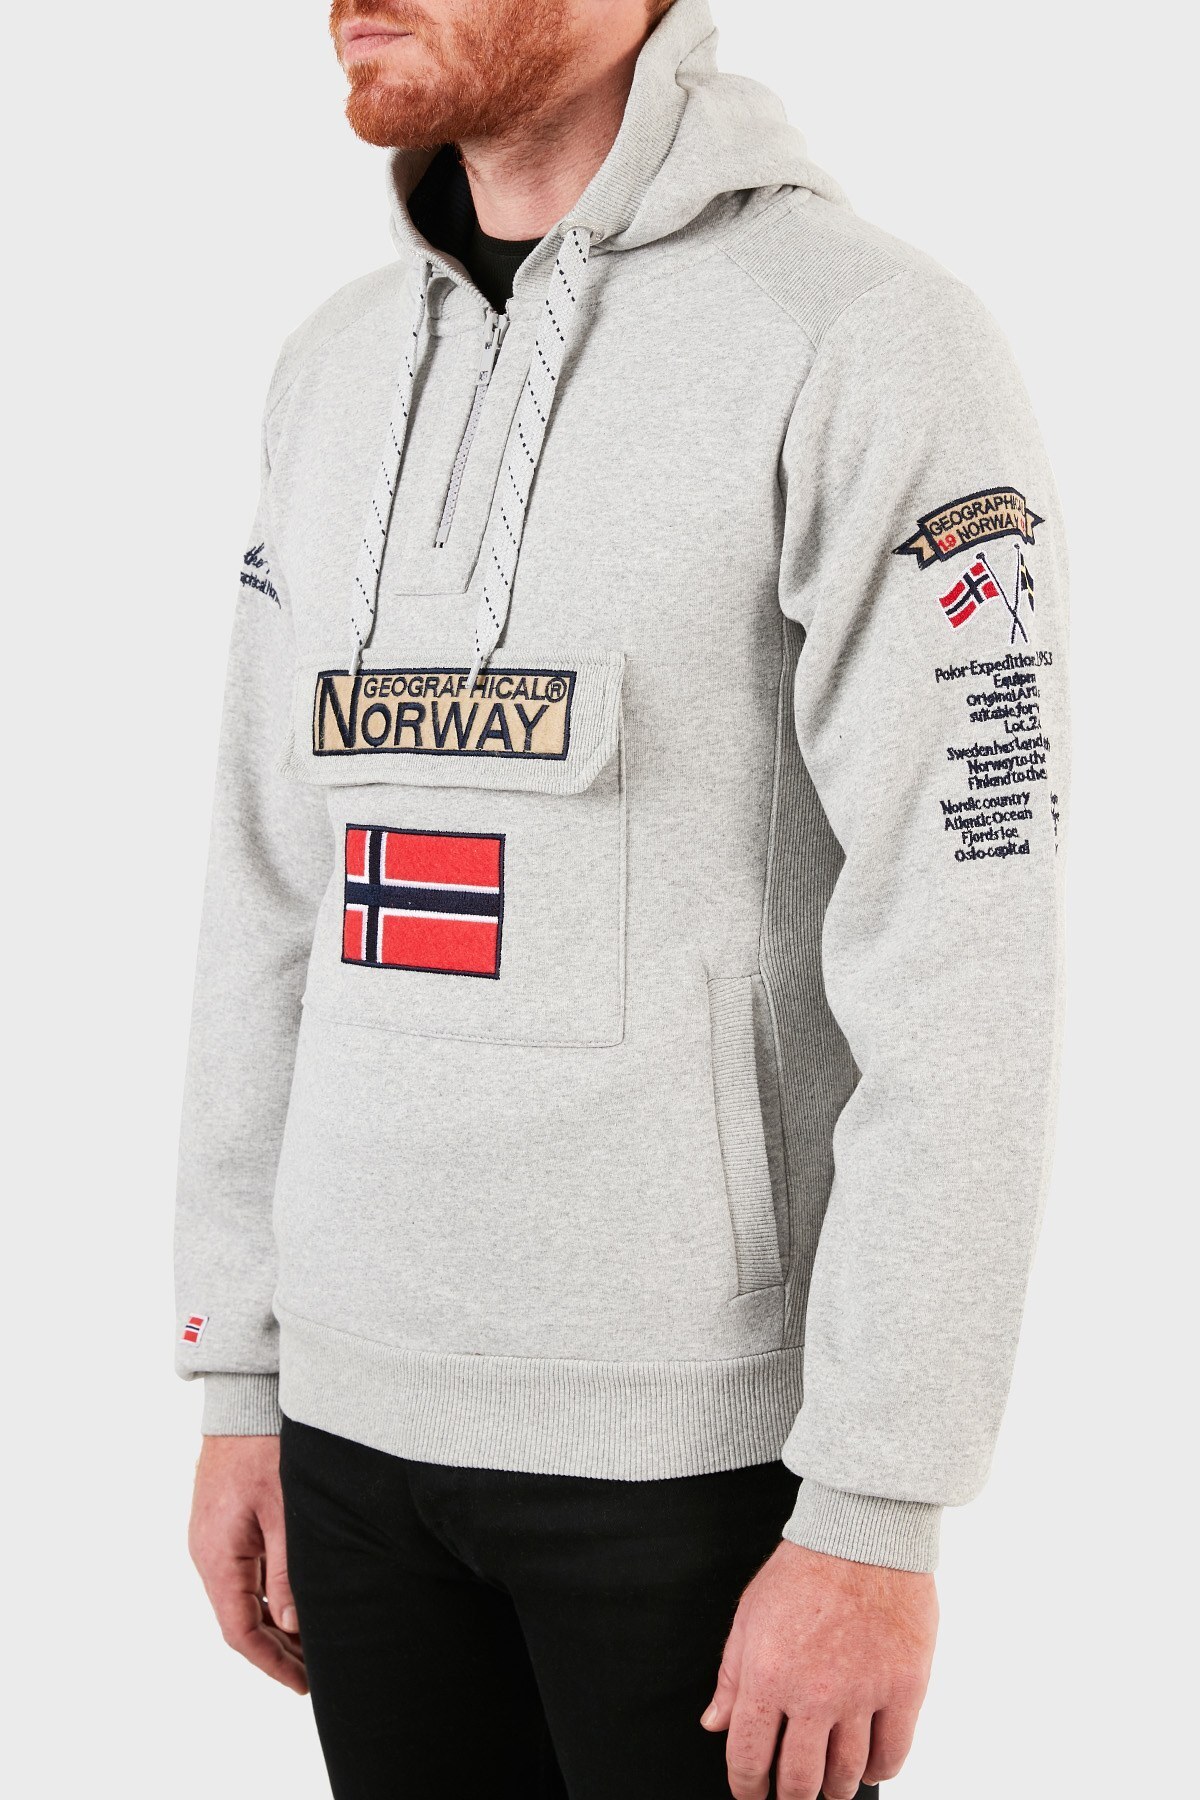 Norway Geographical Kapüşonlu Yarım Fermuarlı Outdoor Erkek Sweat GYMCLASSA100 GRİ